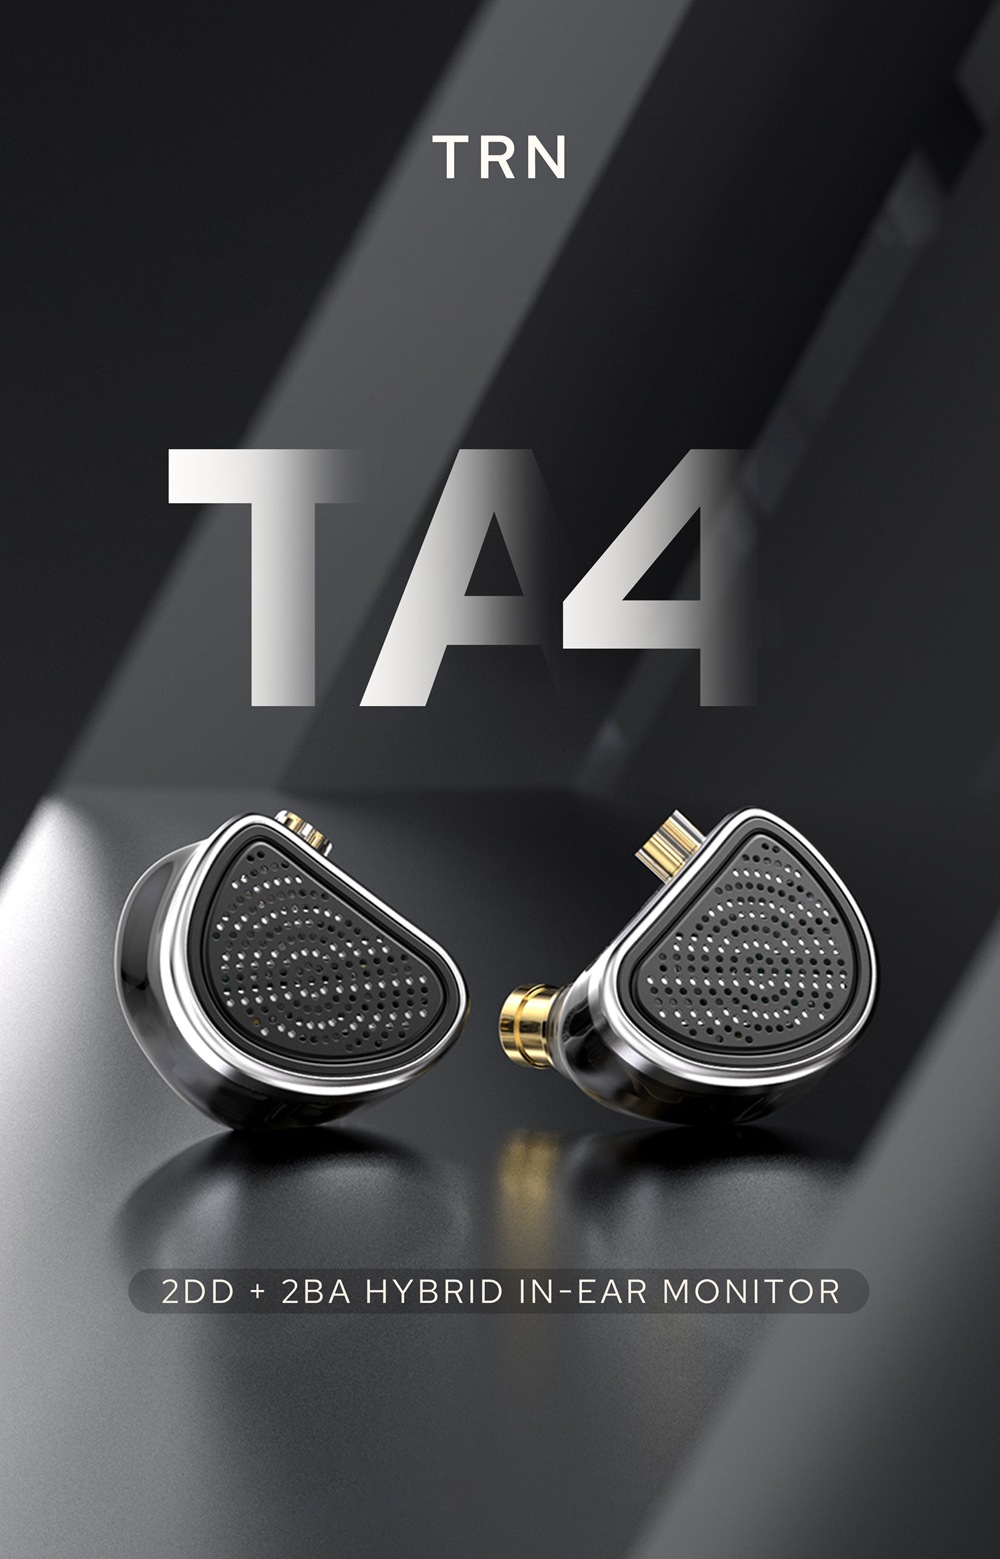 TRN TA4 2DD + 2BA Hybrid In-Ear Monitors-1